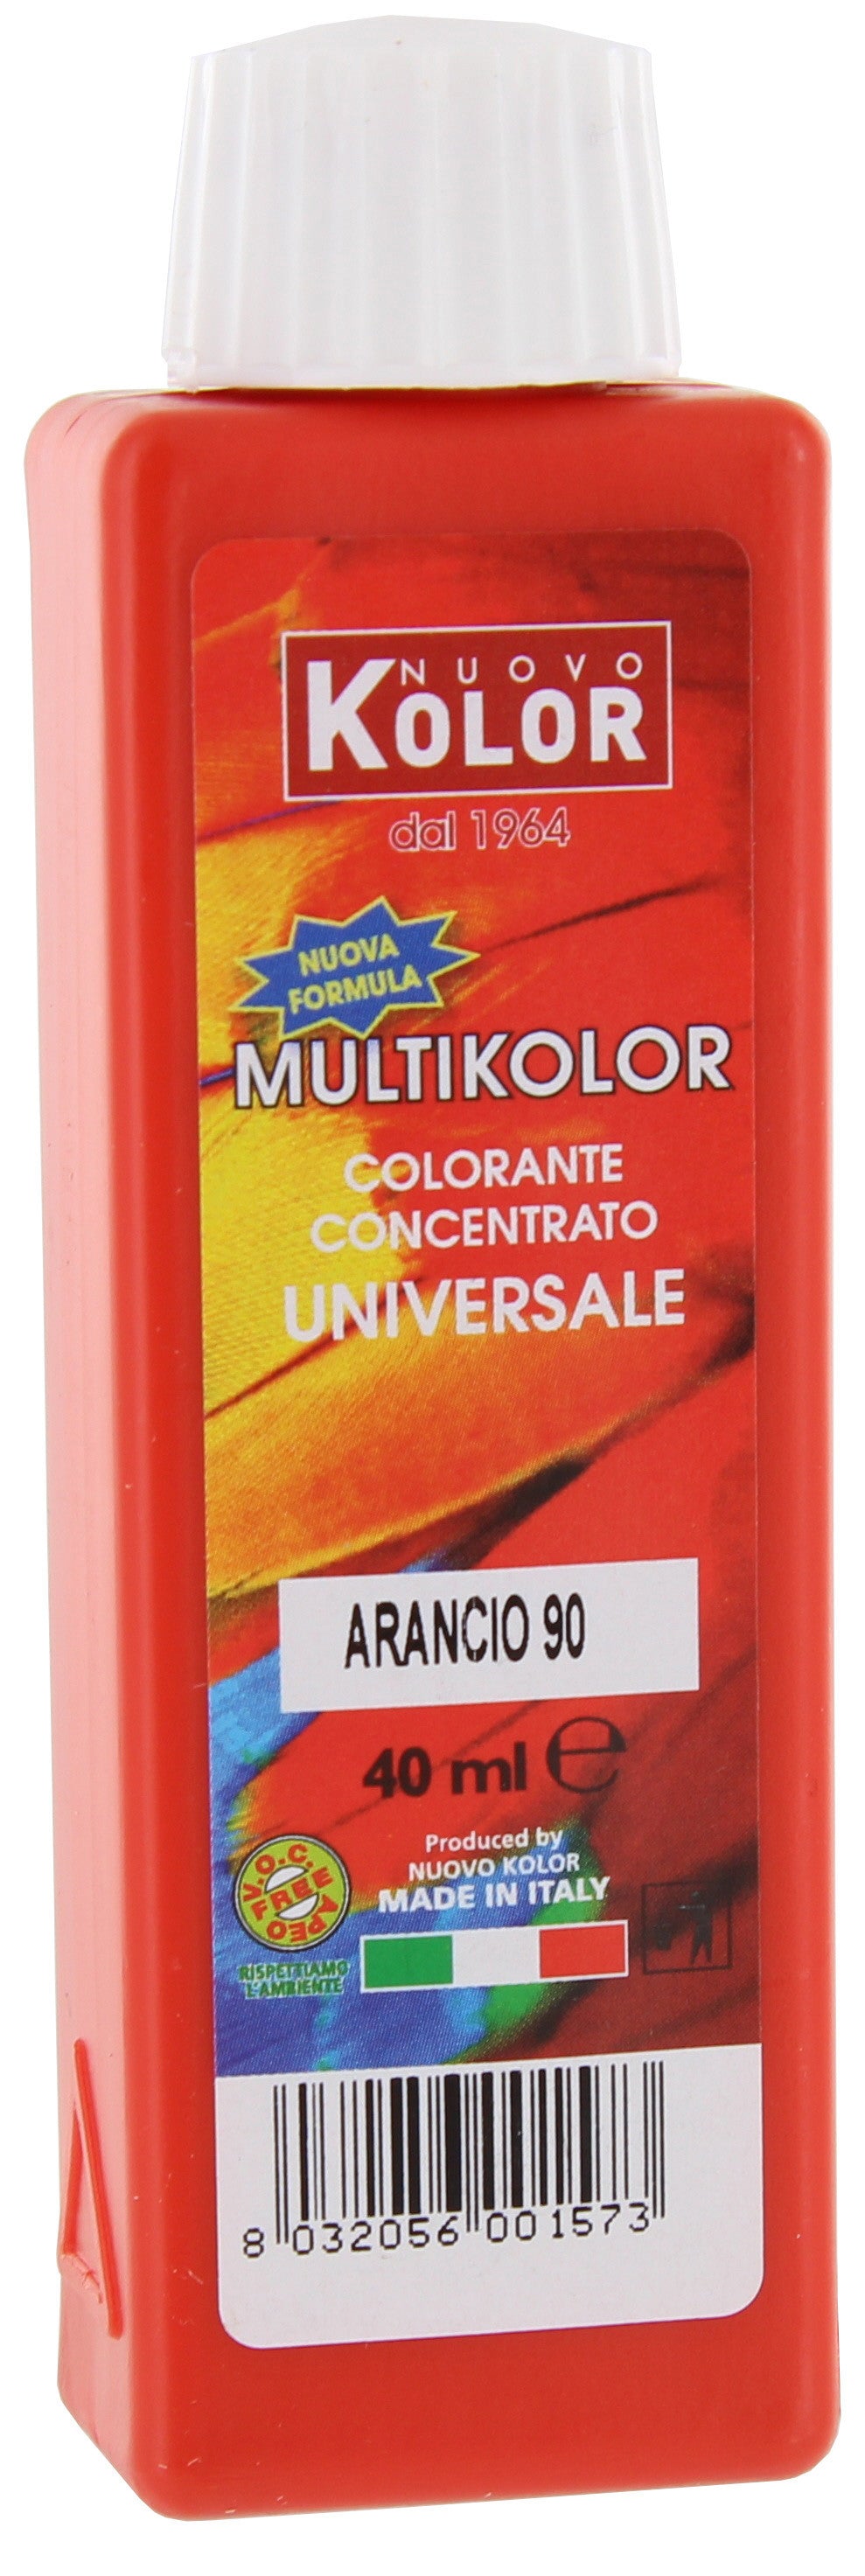 Colorante universale ml.40 arancio       90r